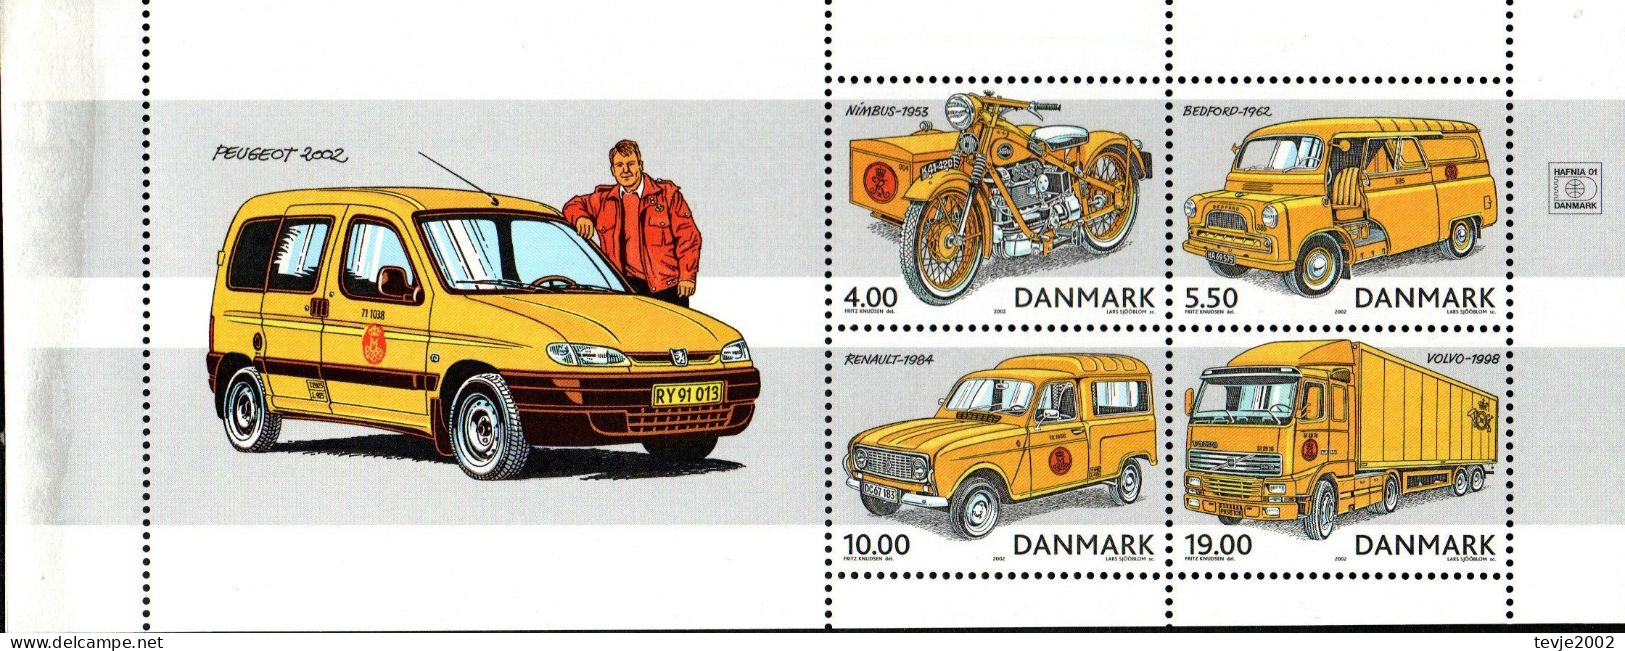 Dänemark 2002 - Mi.Nr. 1312 - 1315 (aus Markenheftchen) - Postfrisch MNH - Post - Unused Stamps